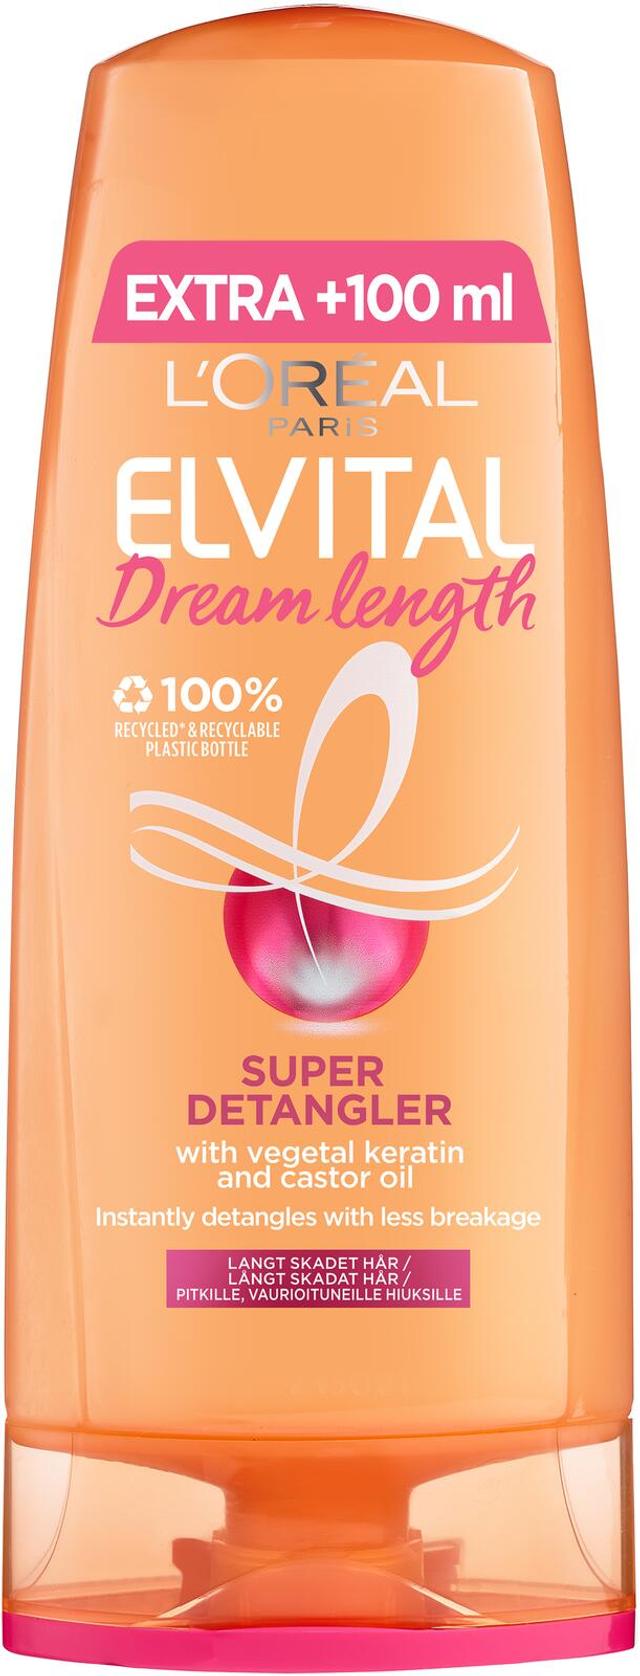 L'Oréal Paris Elvital Dream Length hoitoaine pitkille, vaurioituneille hiuksille 300ml